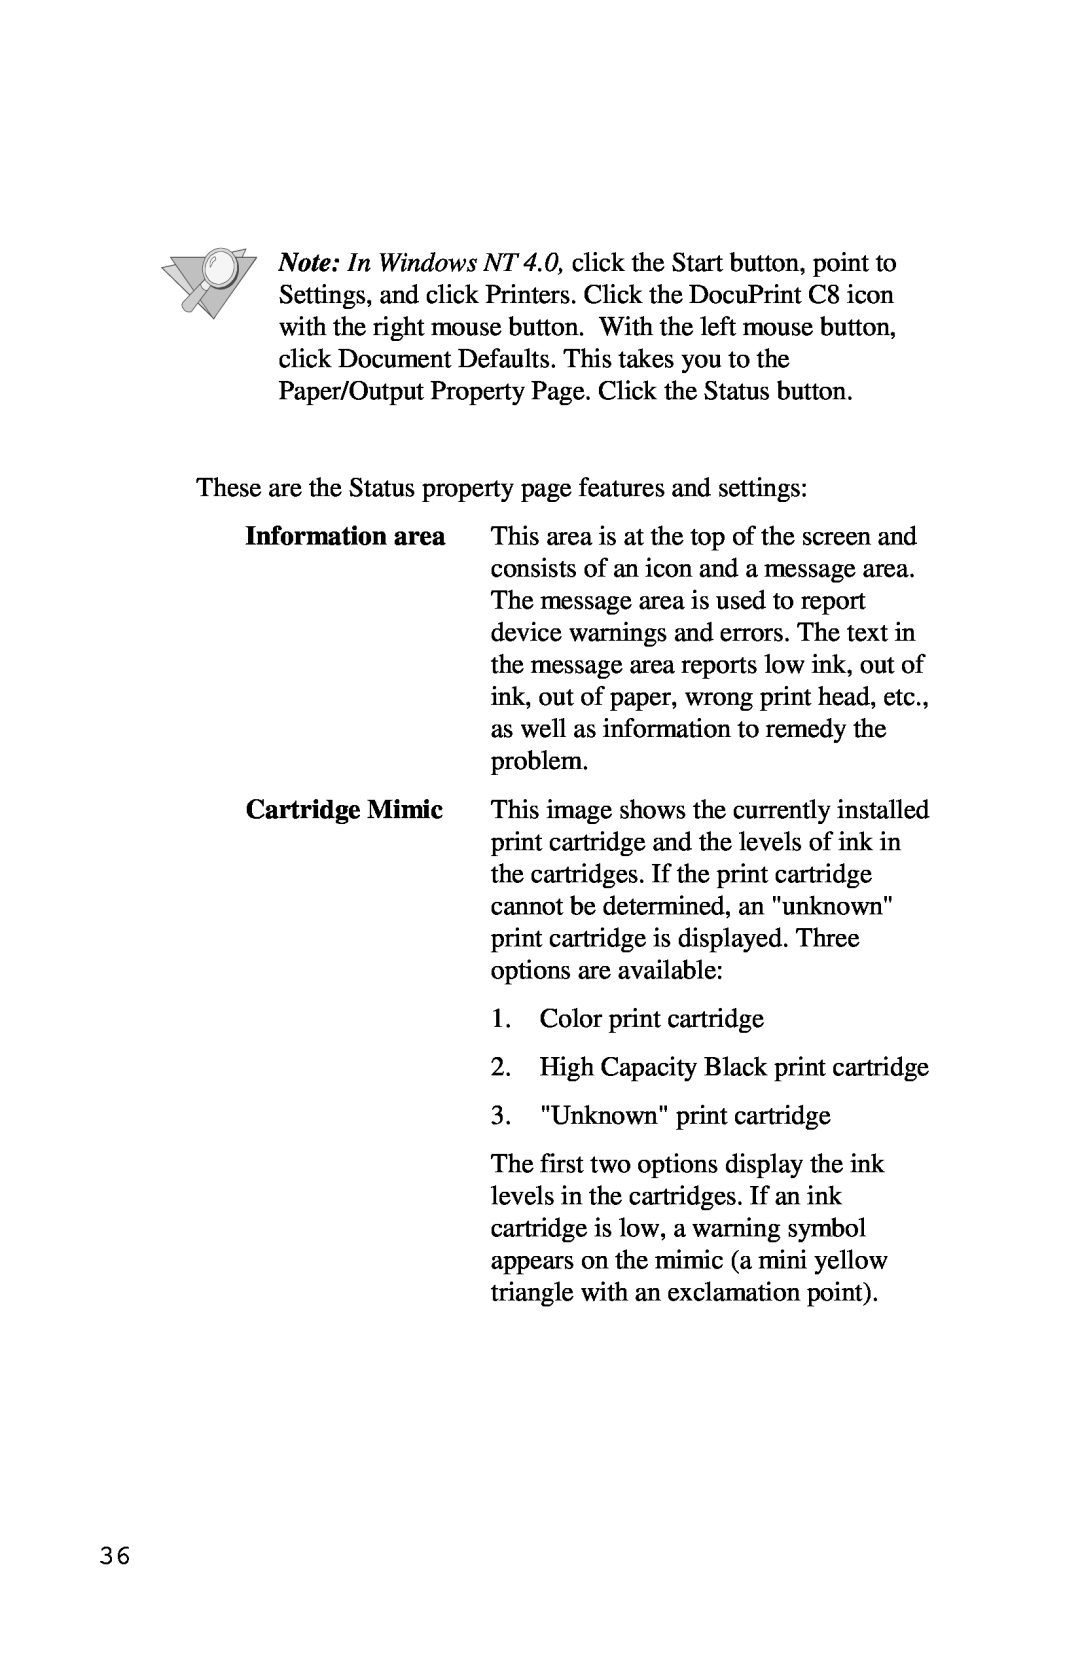 Xerox Inkjet Printer manual Color print cartridge 